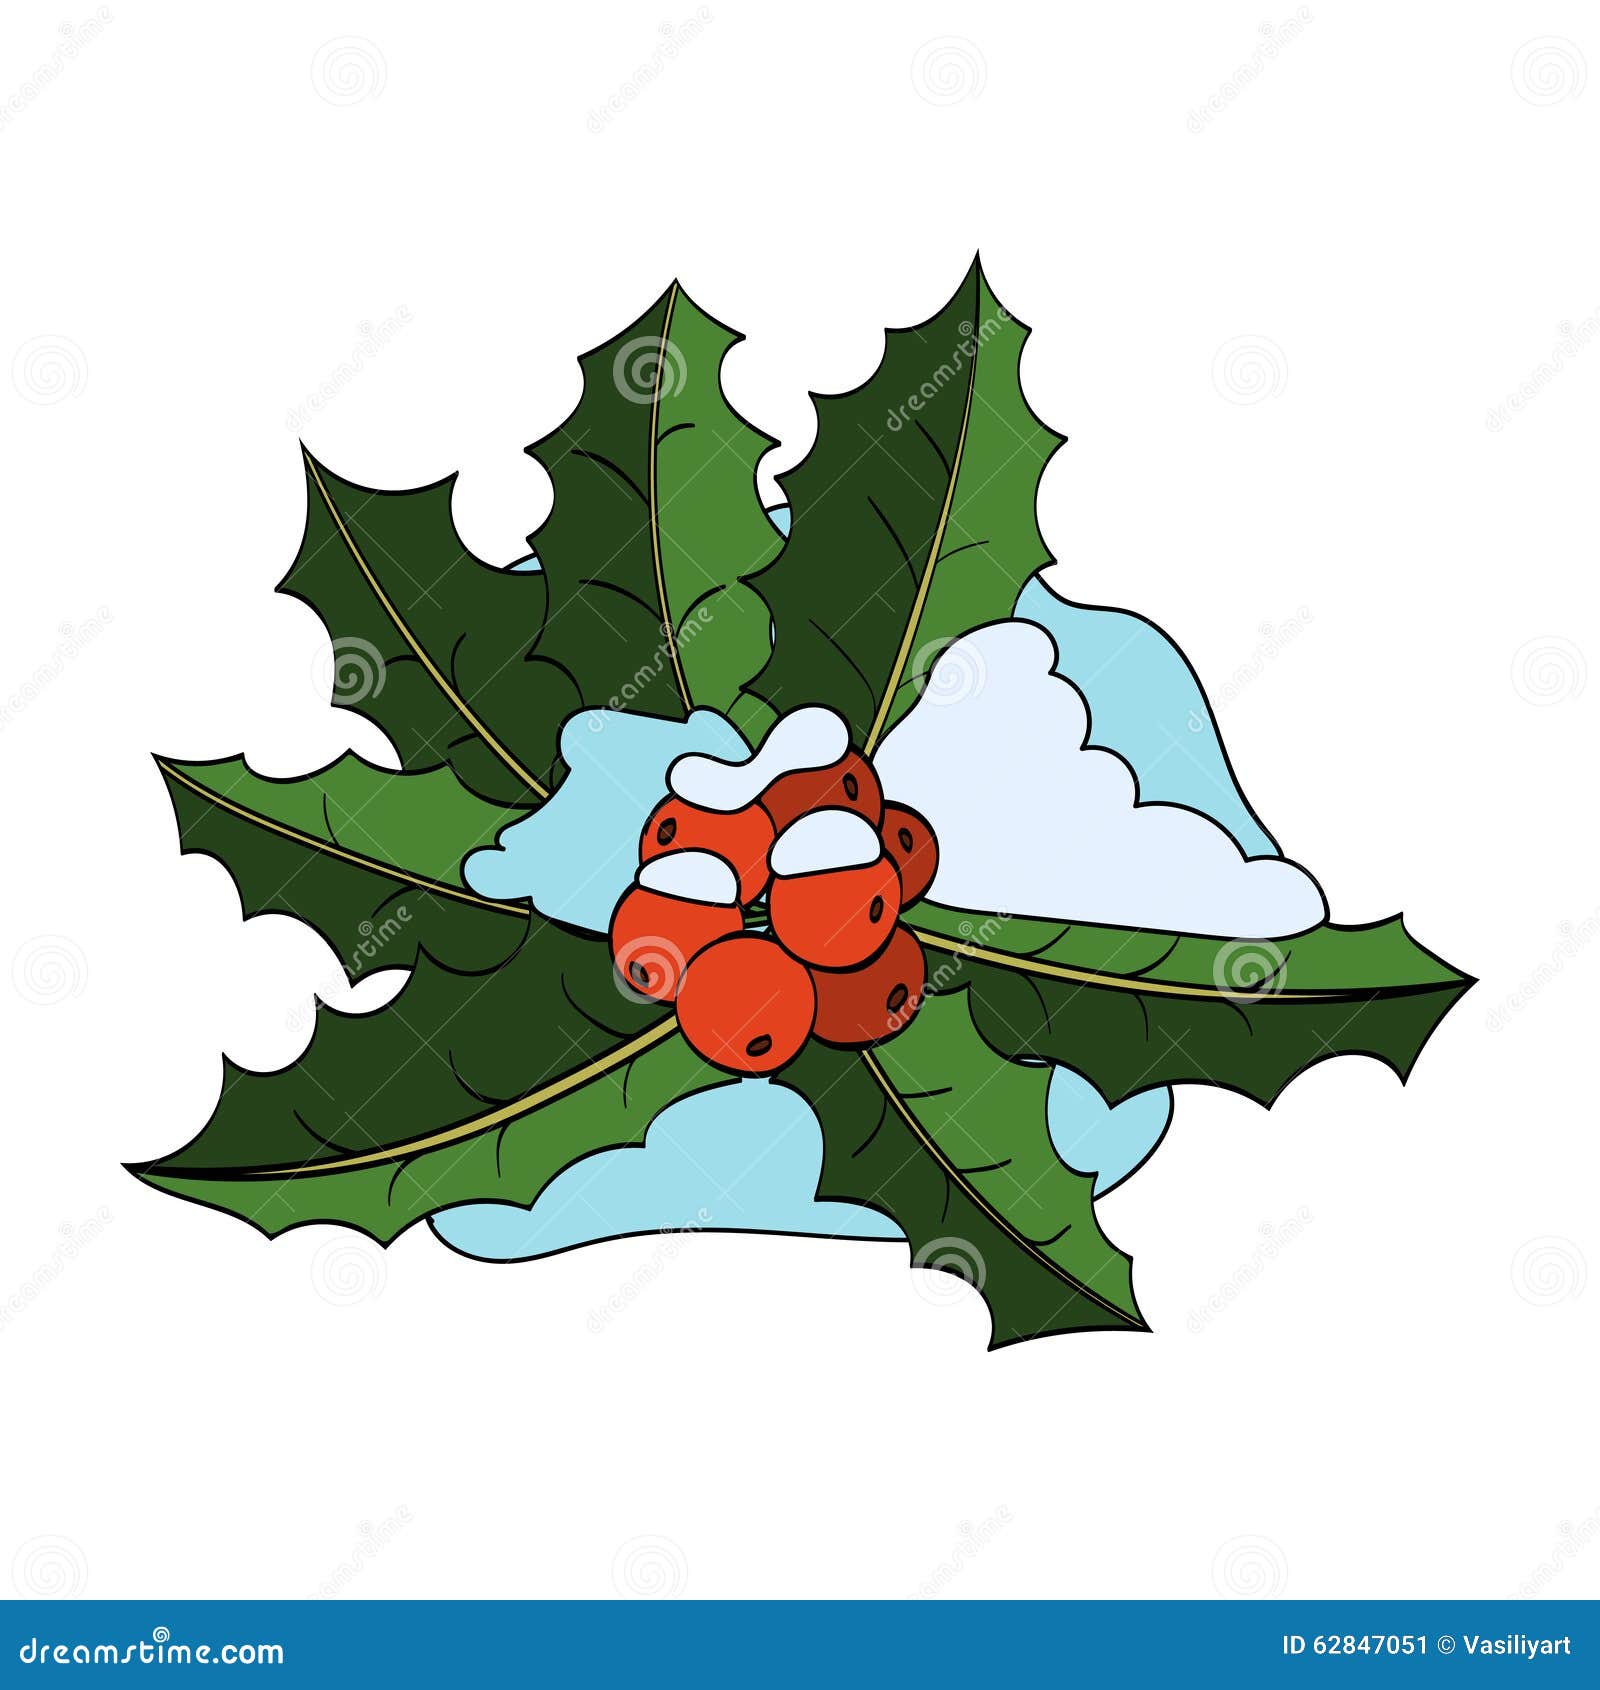 Weihnachten Holly Berry, Blätter, Schnee auf Weiß. Weihnachtsstechpalmenbeere mit Blättern und Schnee lokalisiert auf weißem Hintergrund Vektorhand gezeichnete Abbildung